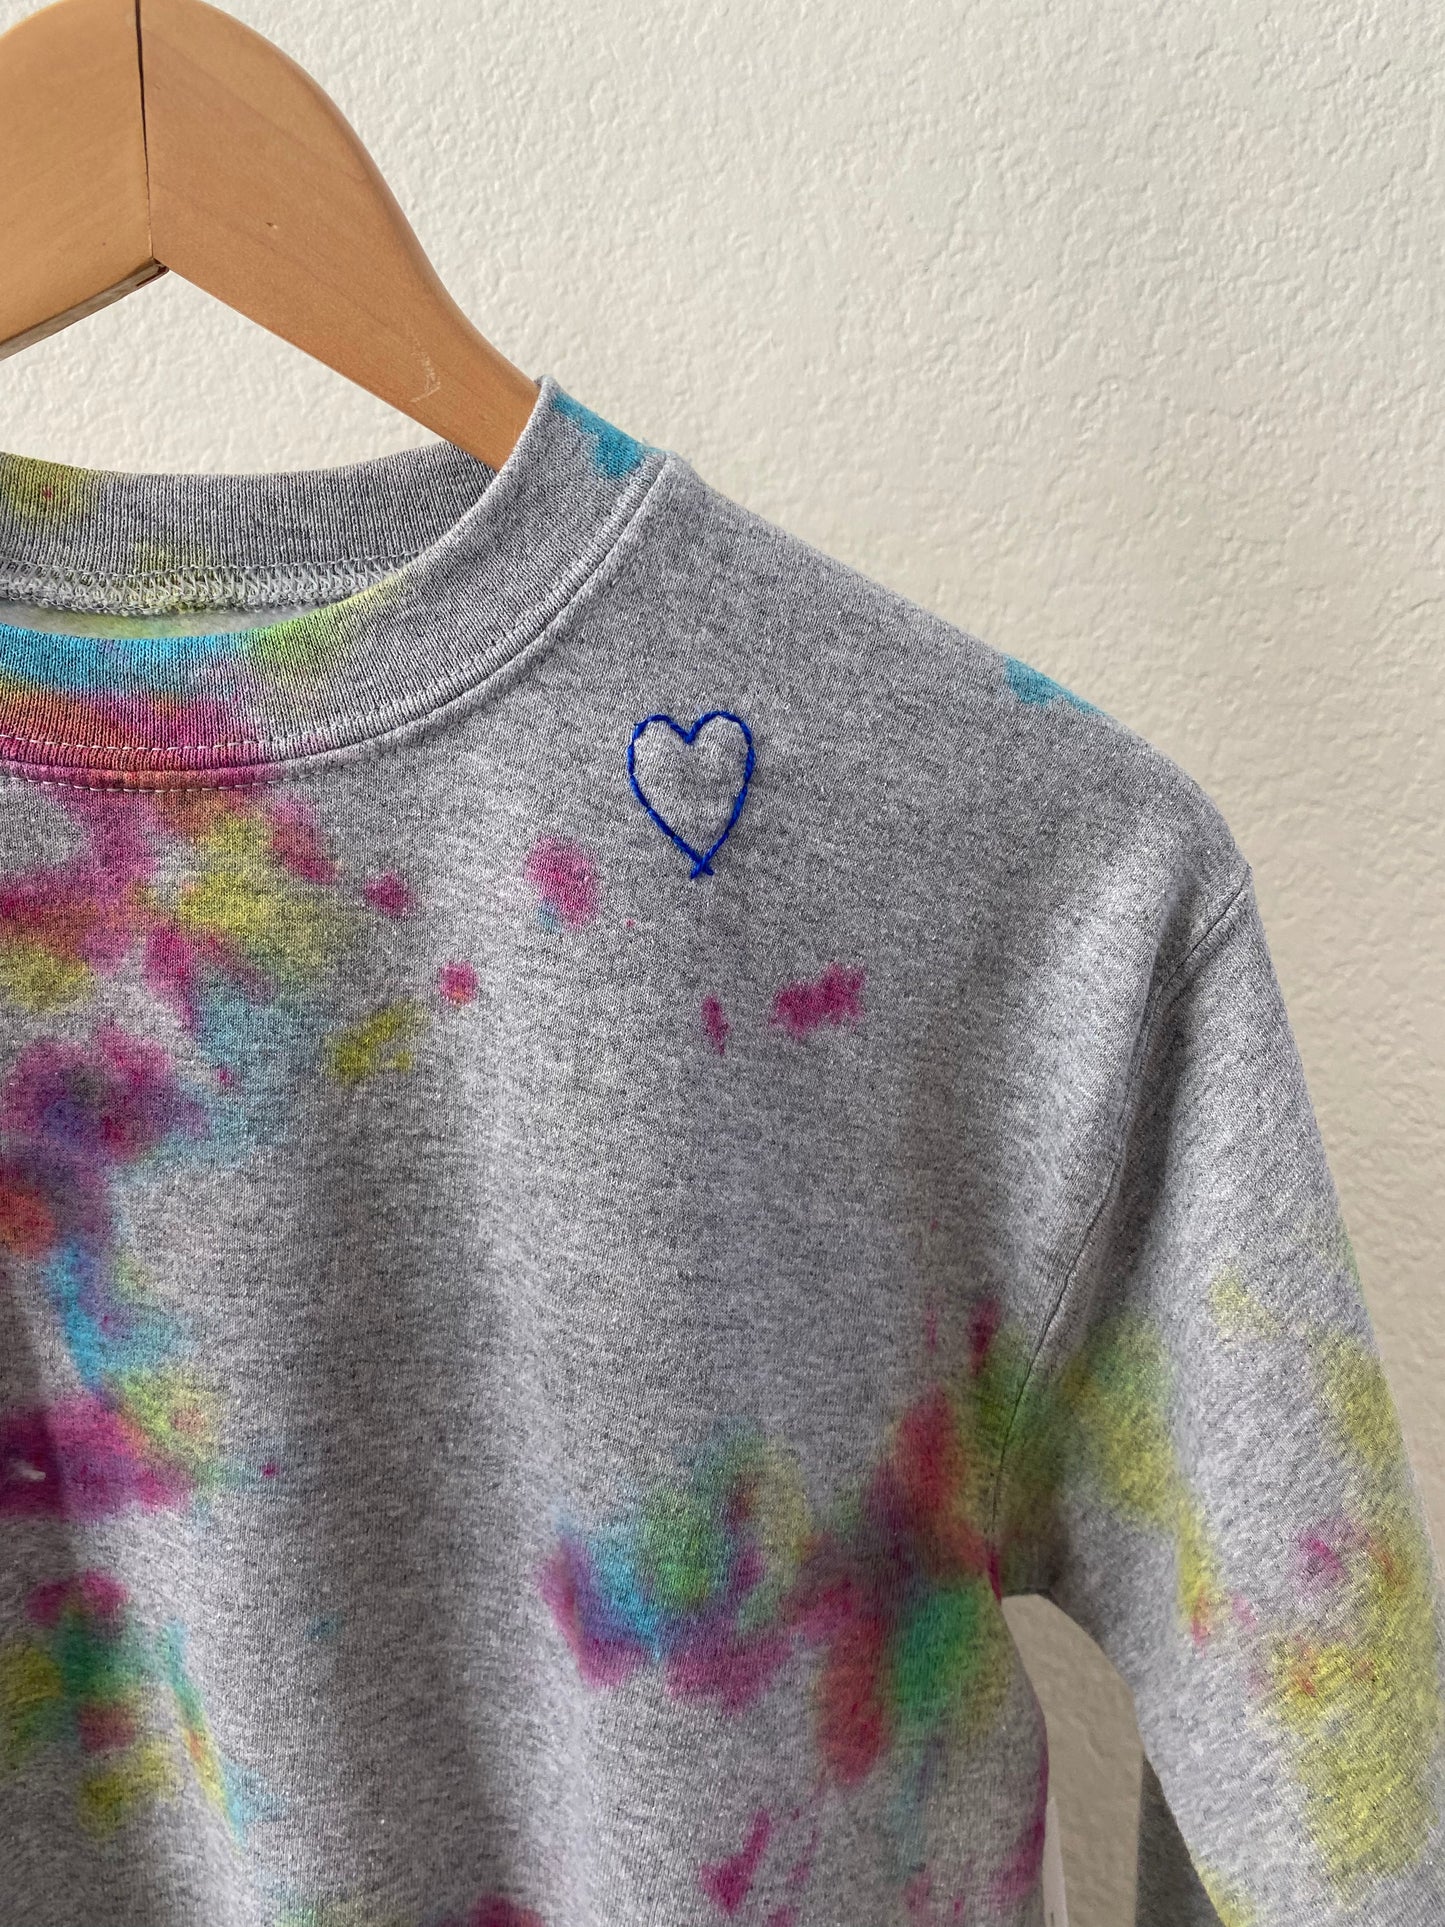 SALE- Kids Rainbow Sweatshirt Large